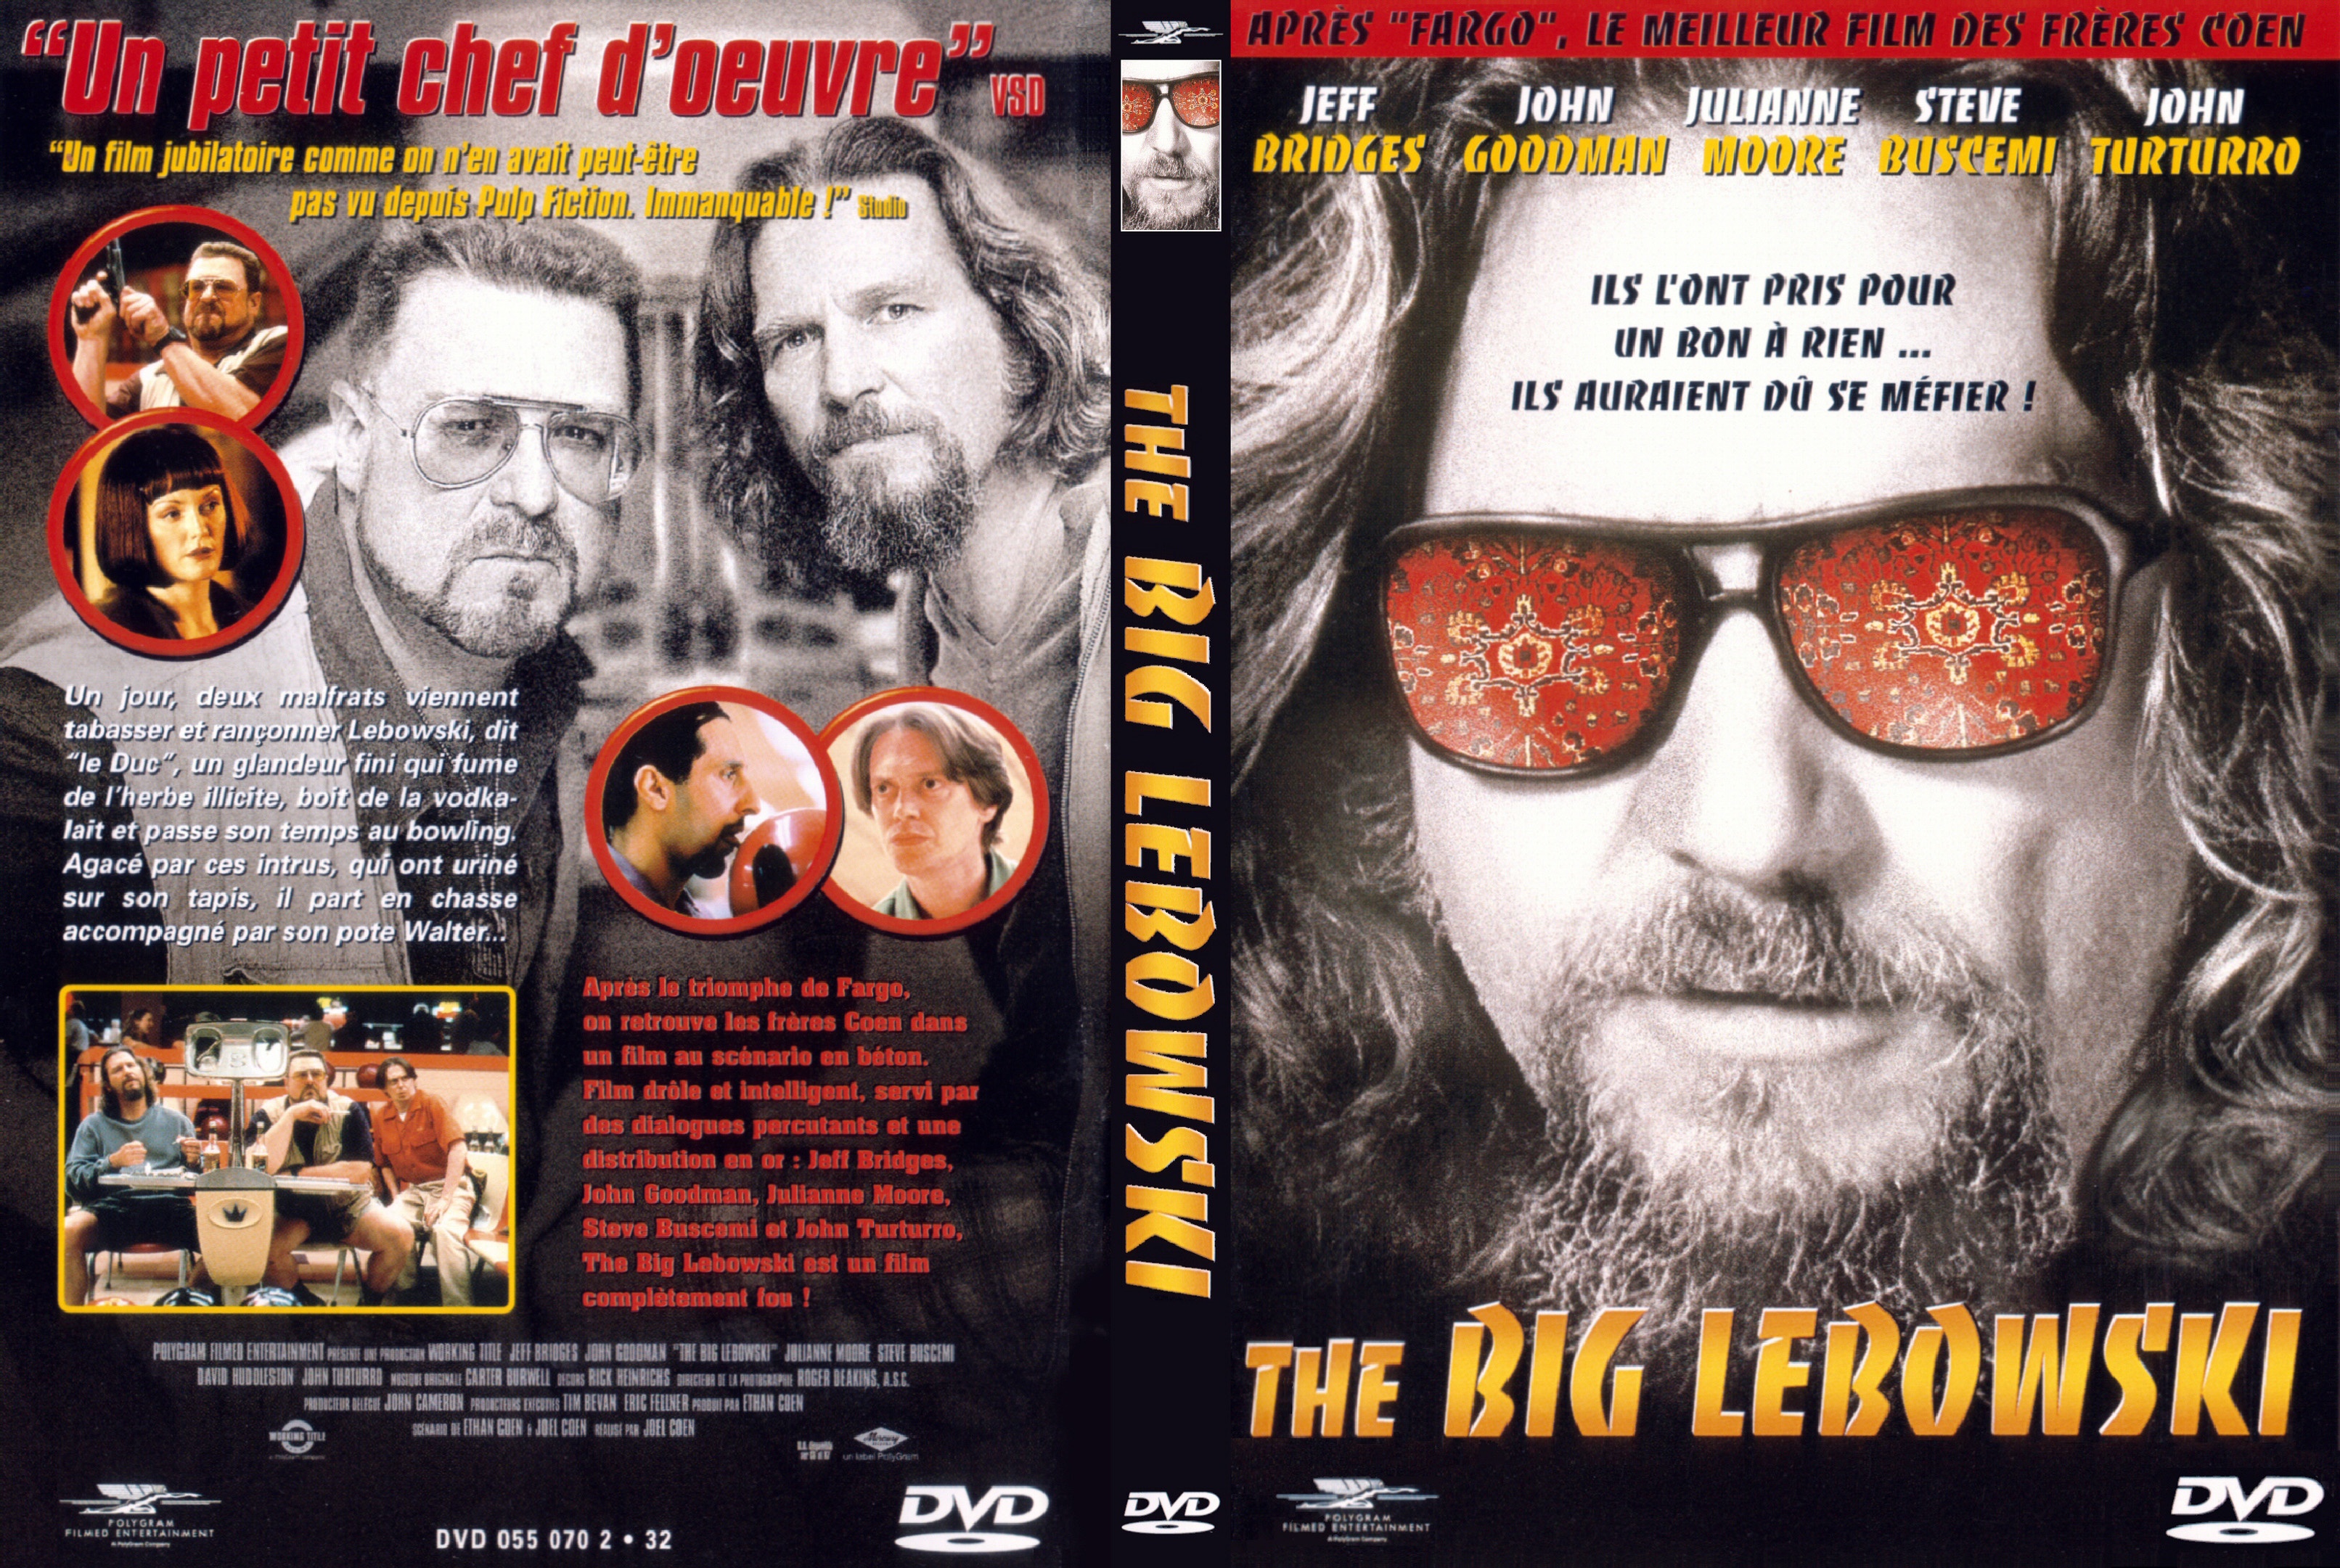 Jaquette DVD The big Lebowski v2